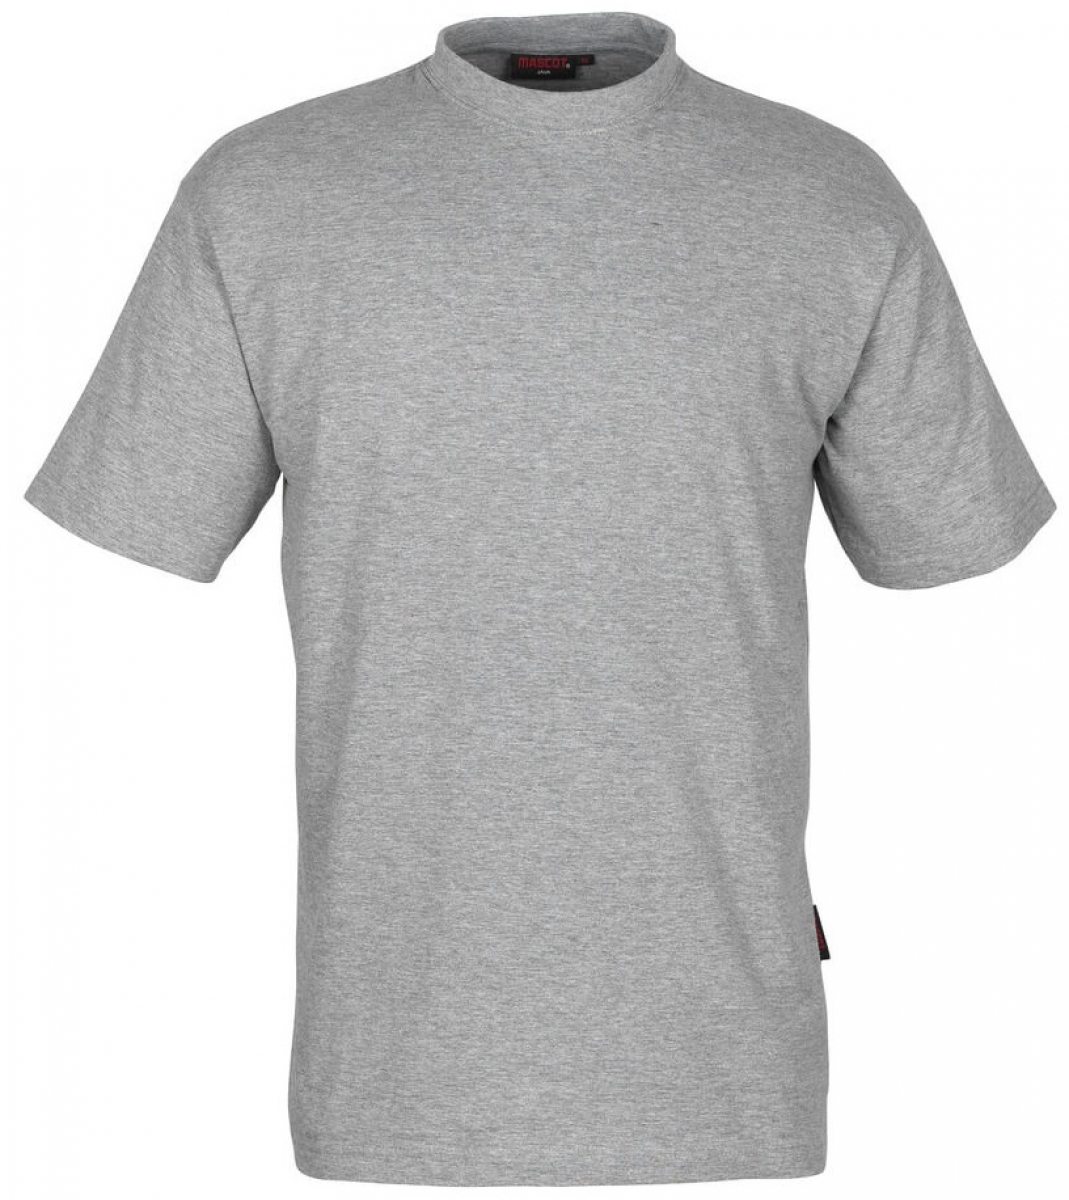 MASCOT-Worker-Shirts, T-Shirt, Java, 10er Pack, 195 g/m, grau-meliert